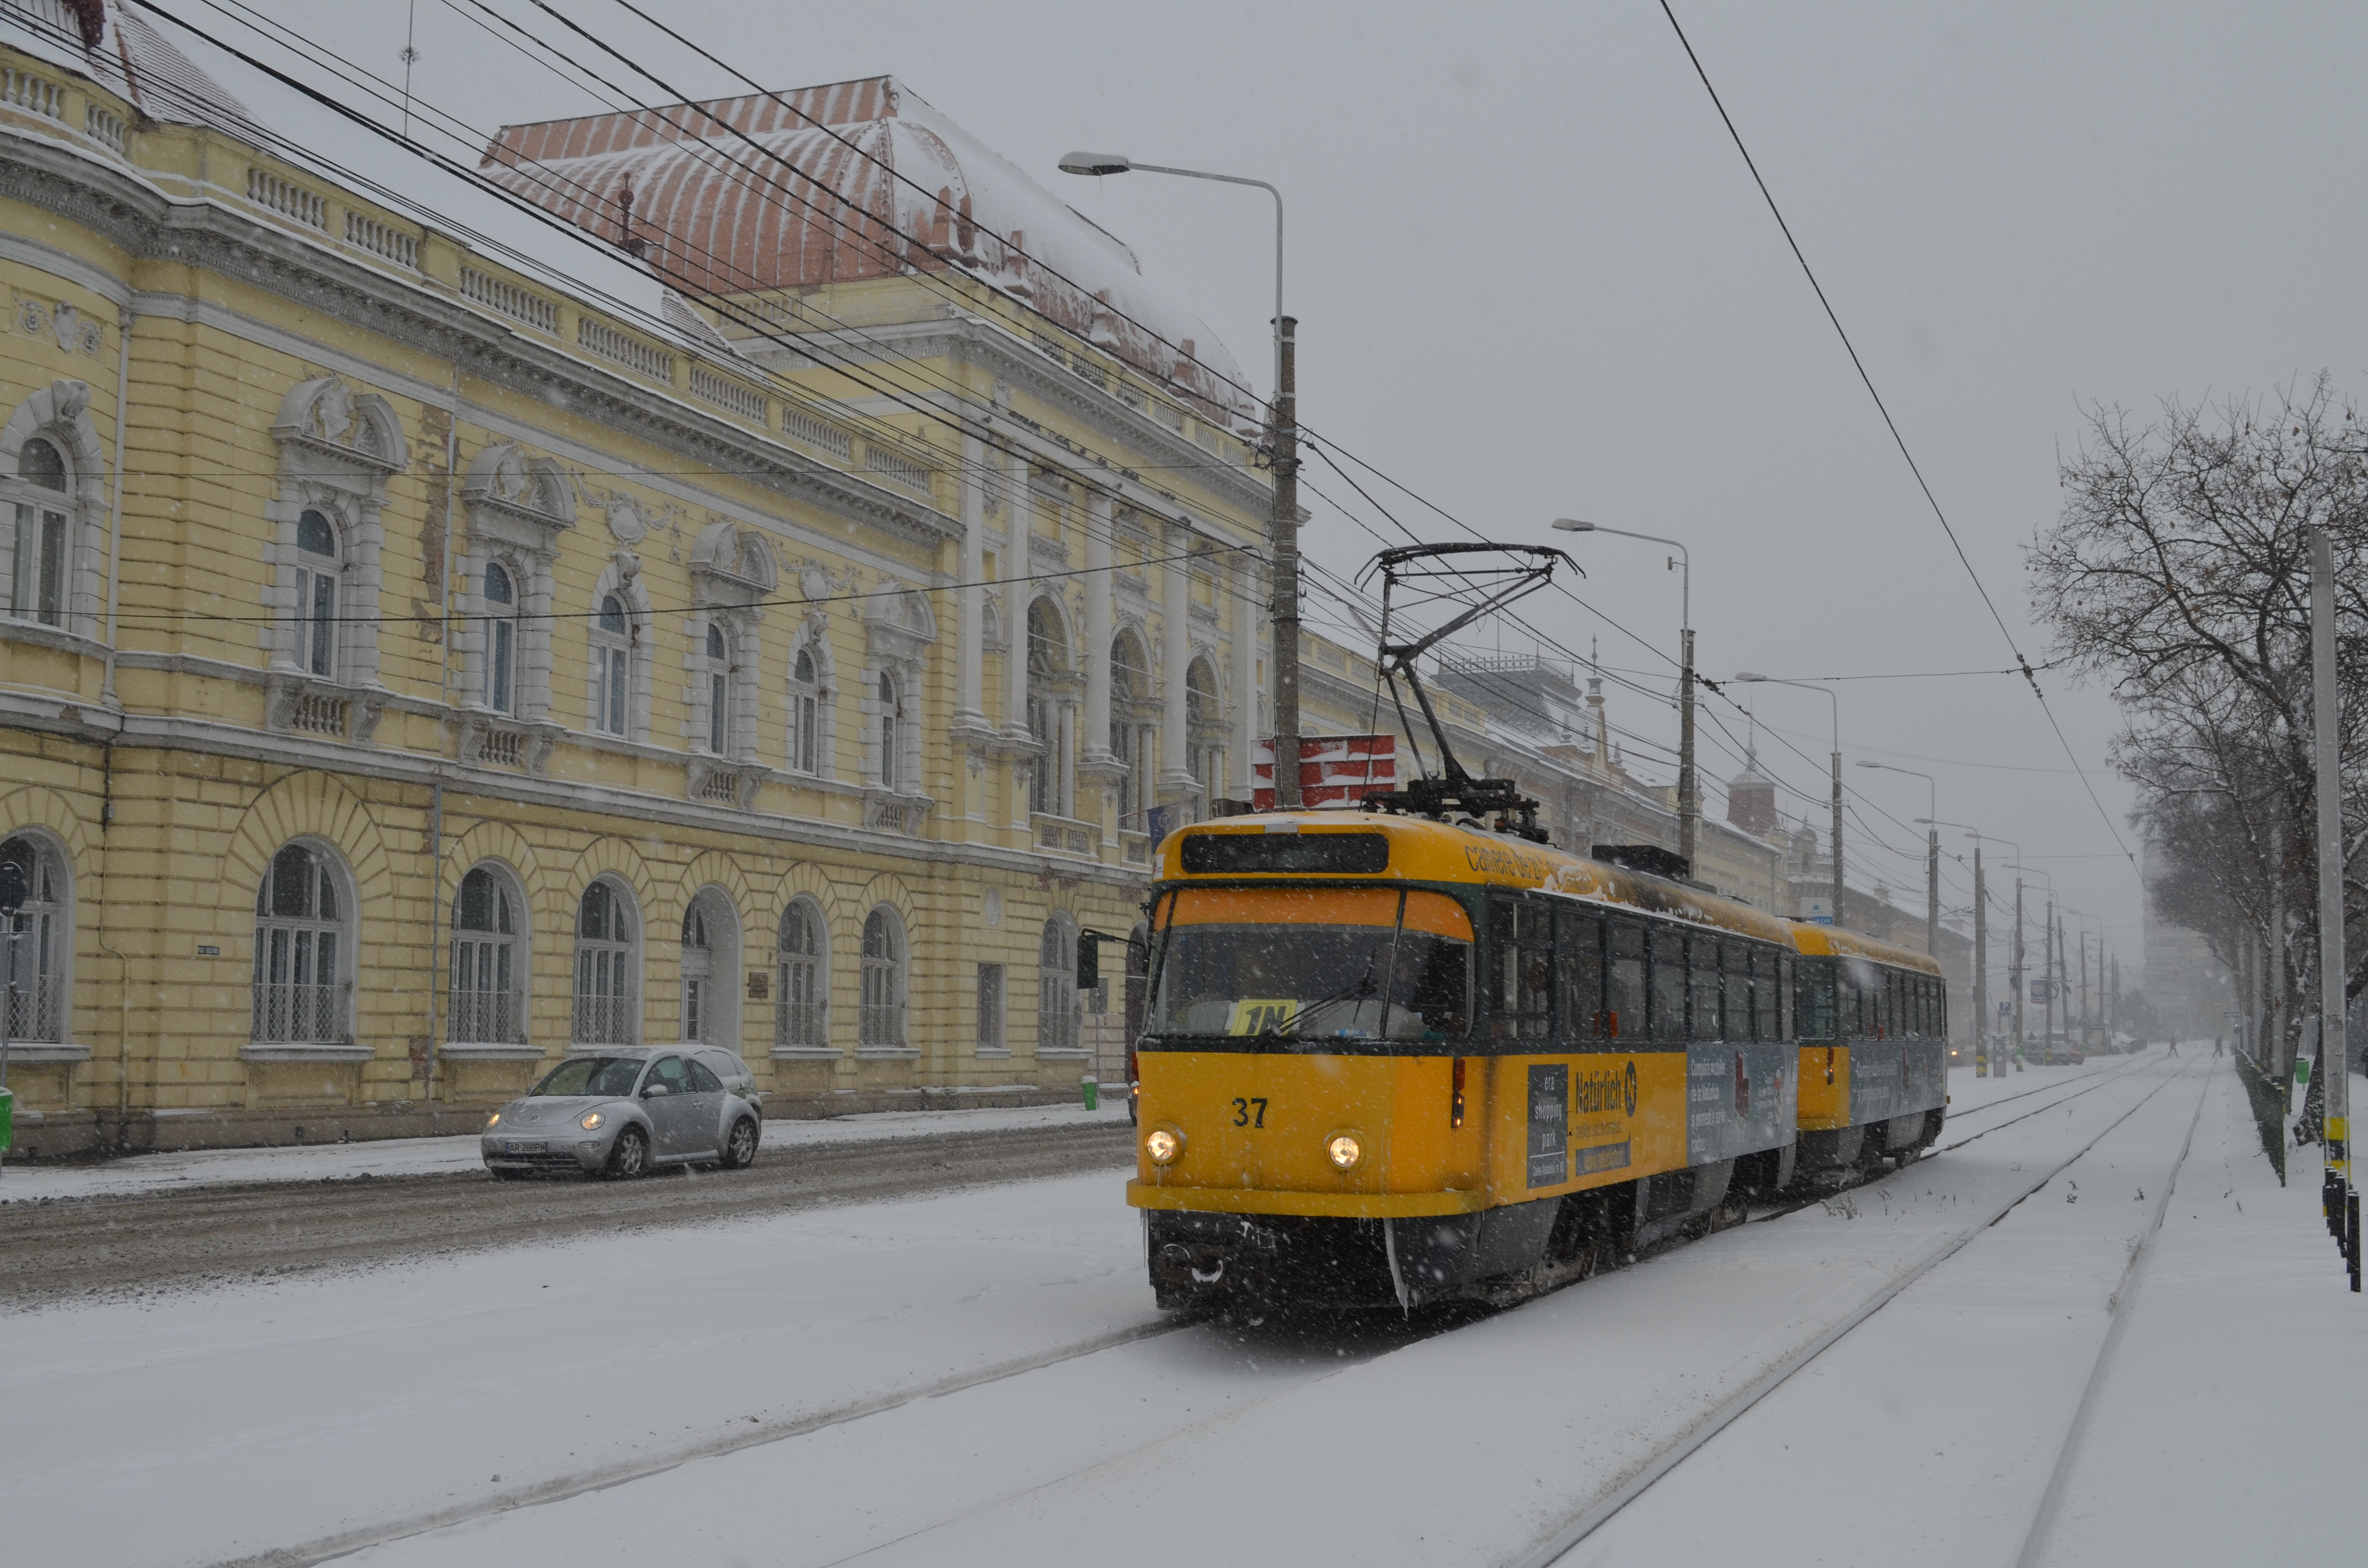 Iarna si-a intrat in drepturi. Mai multe orase din tara au deja un strat de zapada consistent pe strazi sursa ebihoreanul.ro